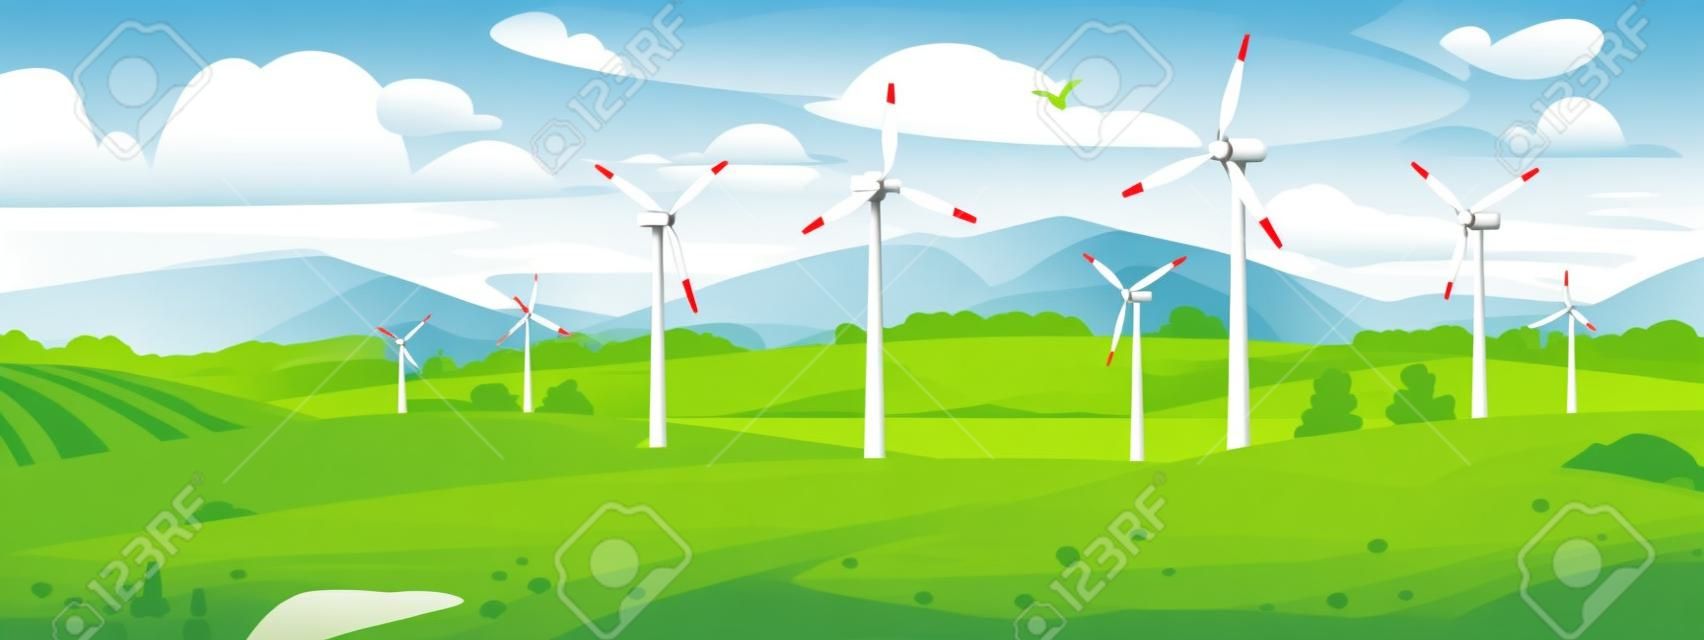 Farma wiatrowa lub elektrownia na polu w pobliżu jeziora i gór latem. turbiny wiatrowe elektrowni wytwarzają przyjazną dla środowiska i zrównoważoną energię elektryczną. ilustracja kreskówka styl wektor.